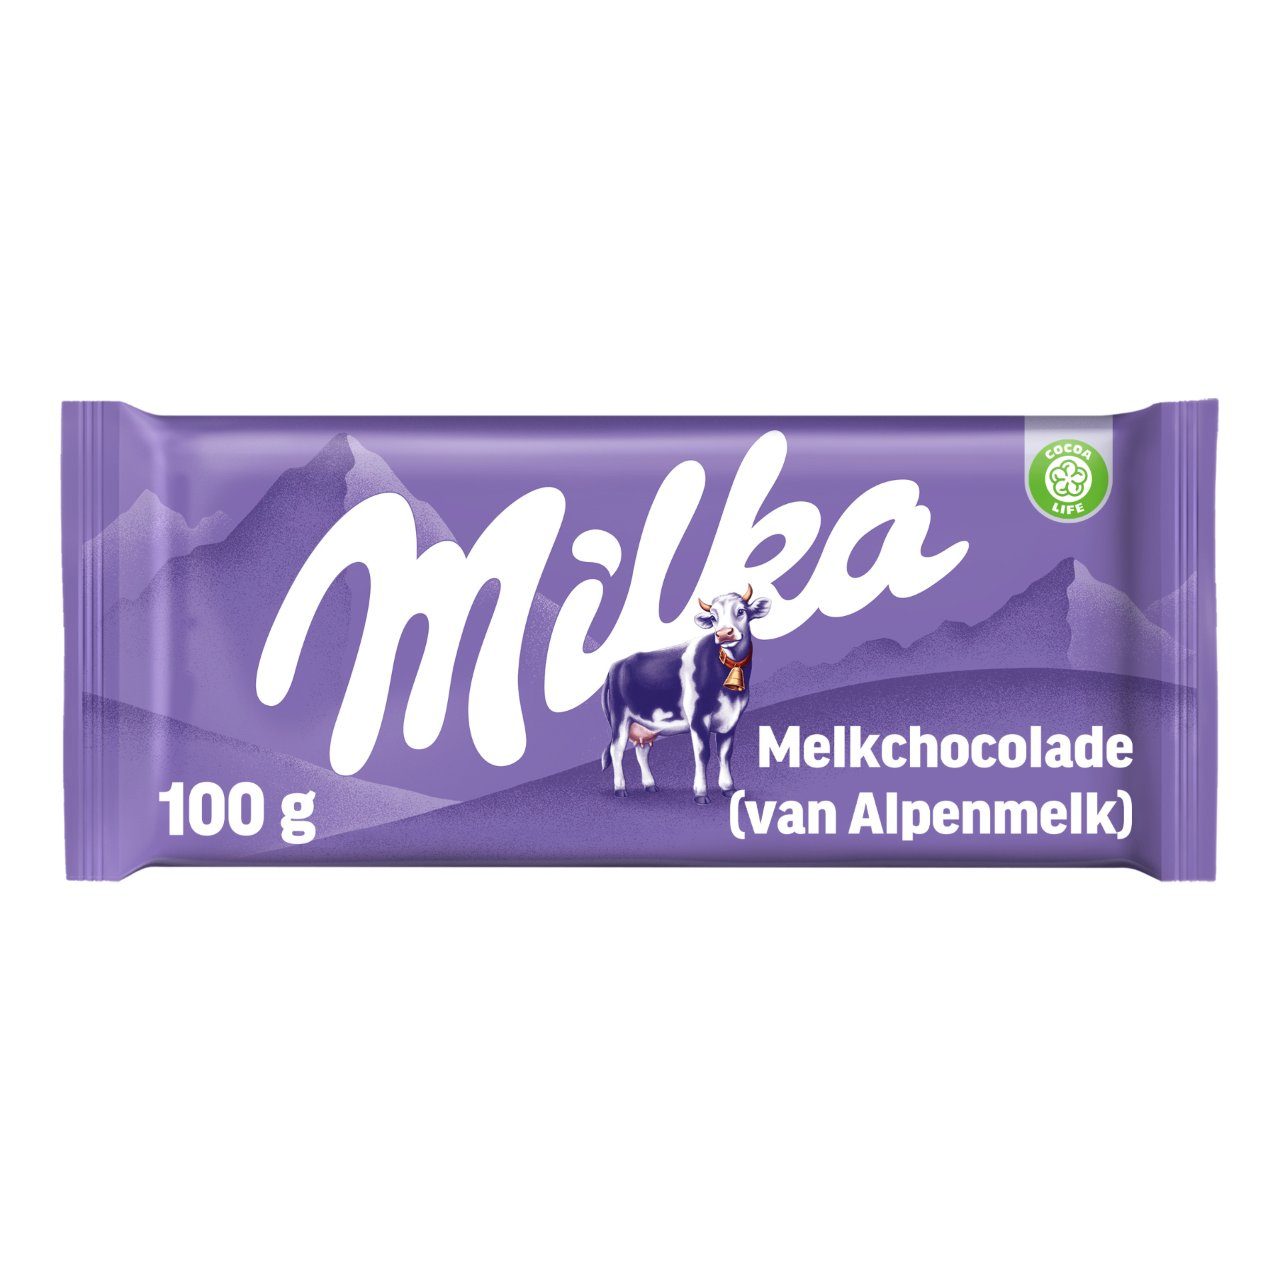 Alpenmelkchocolade